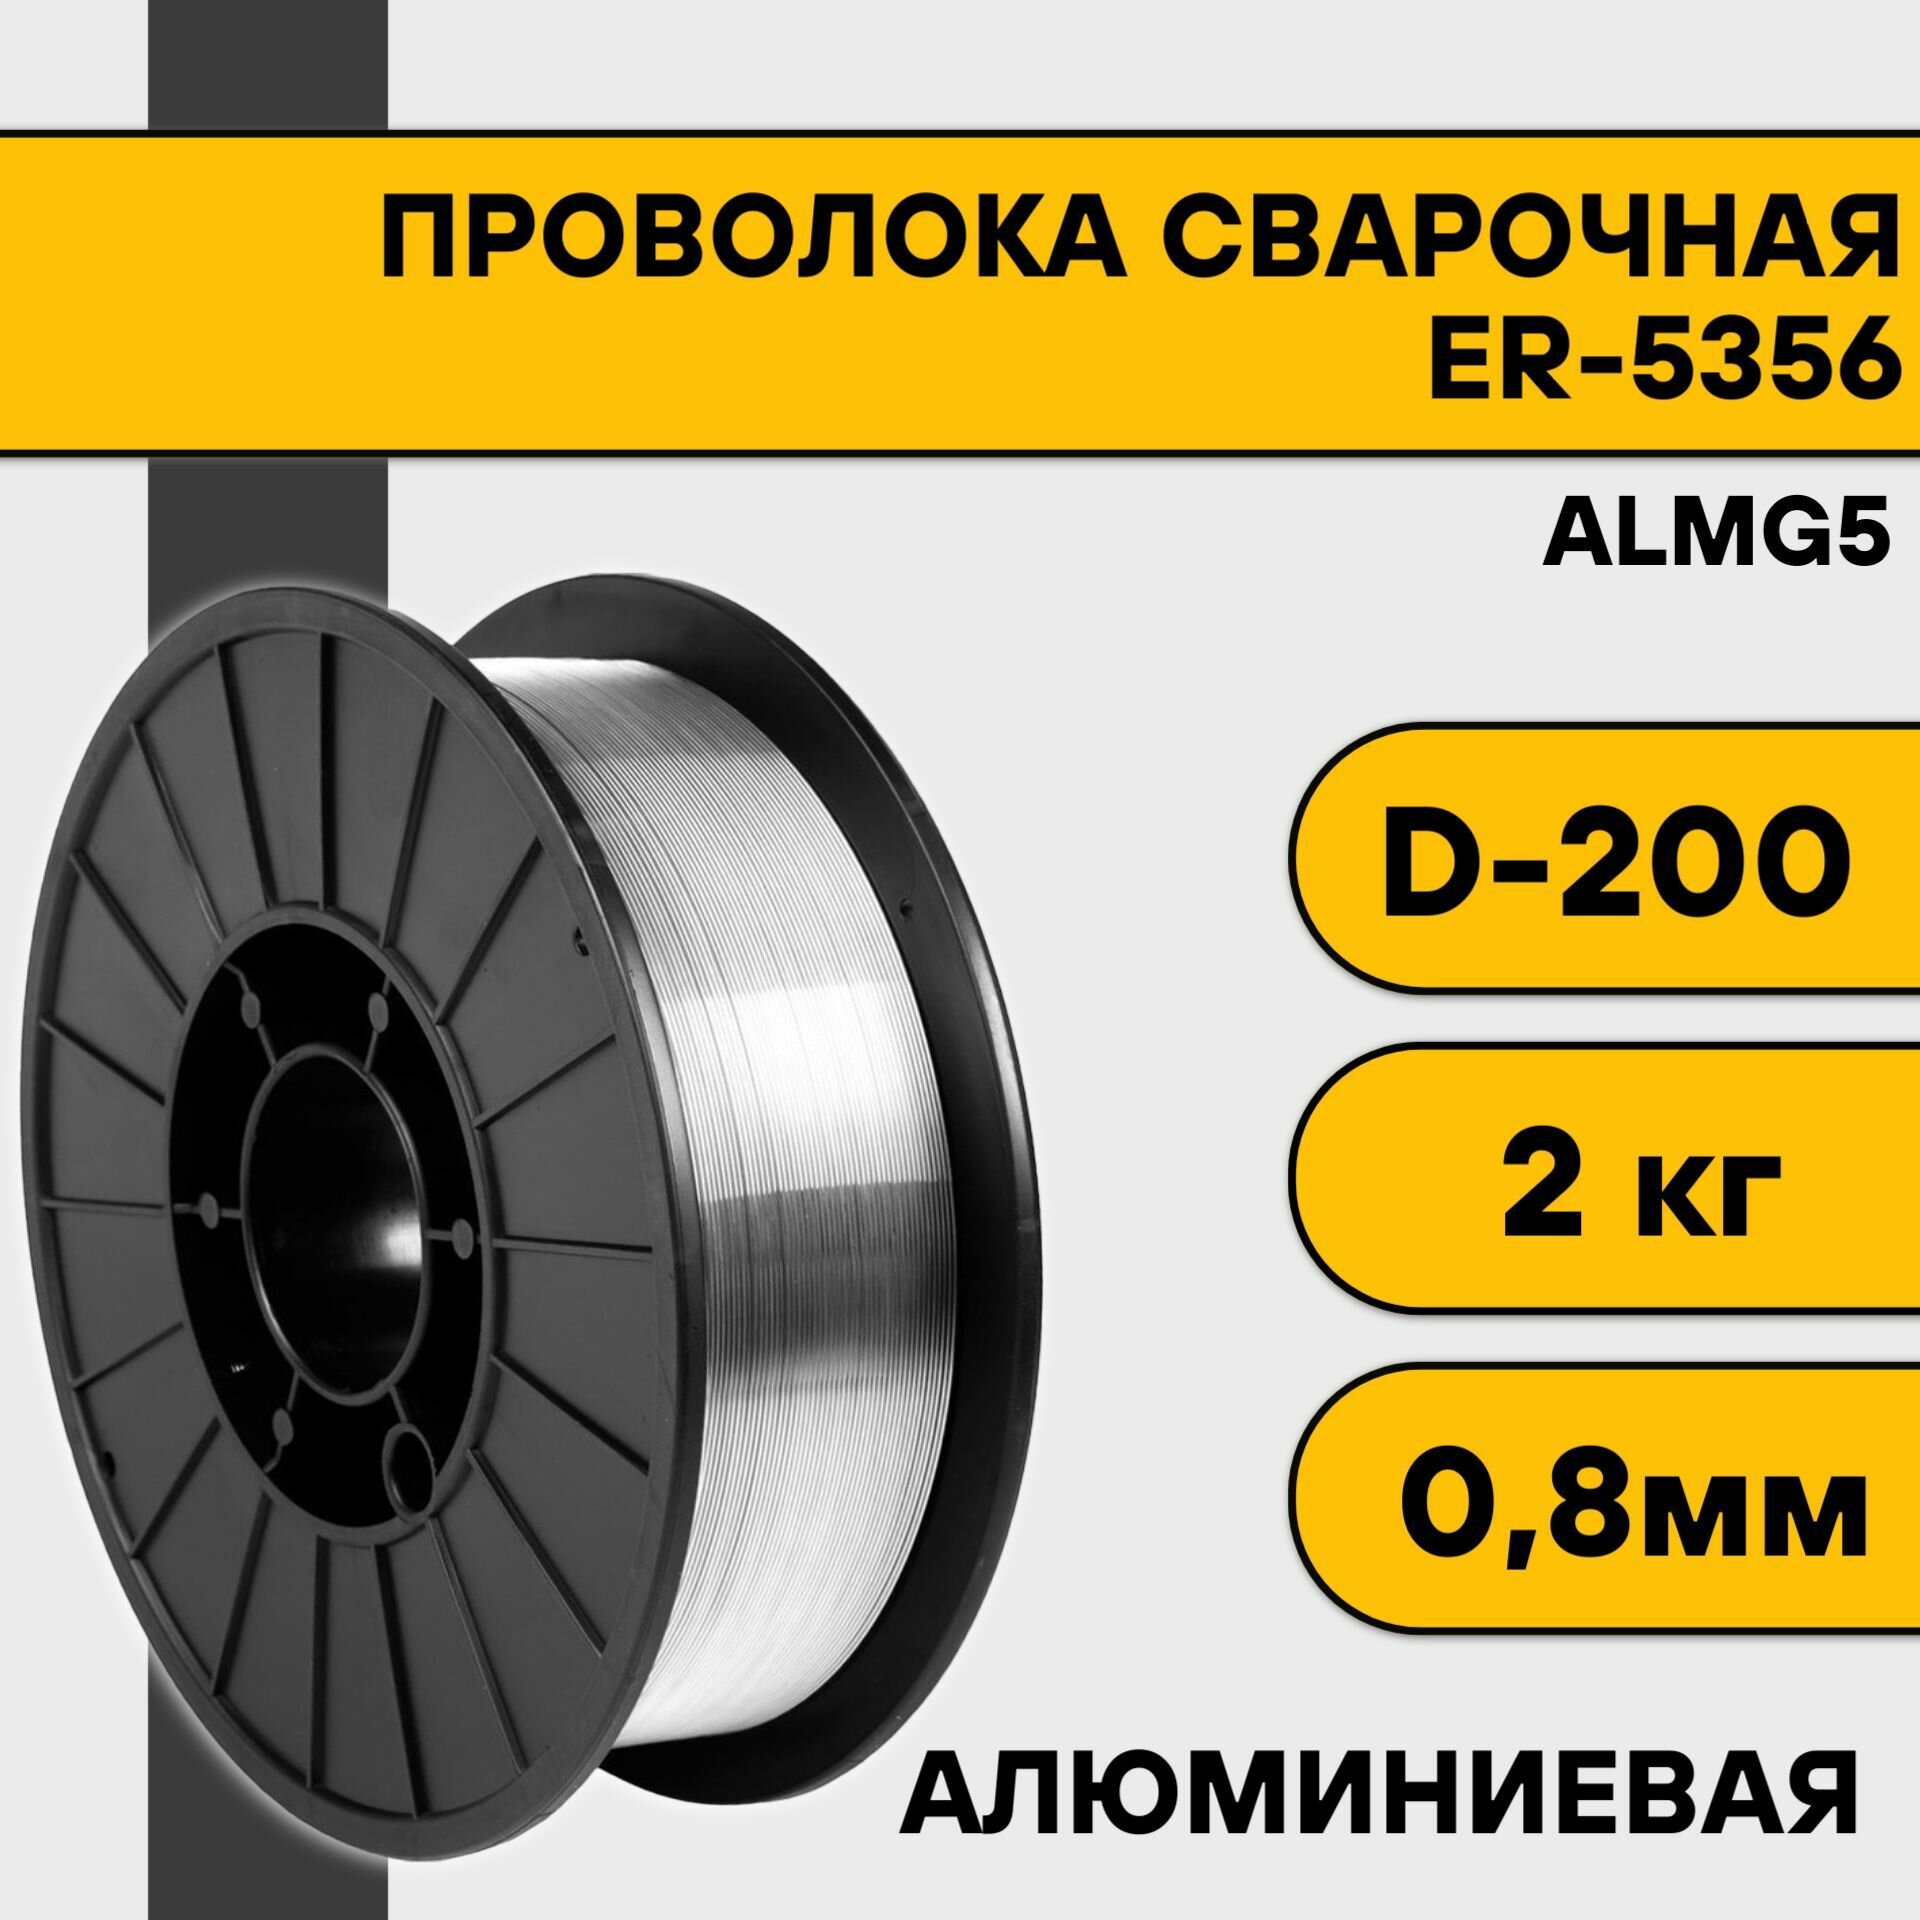 Проволока сварочная ER-5356 (Almg5) ф 08 мм (2 кг) D200